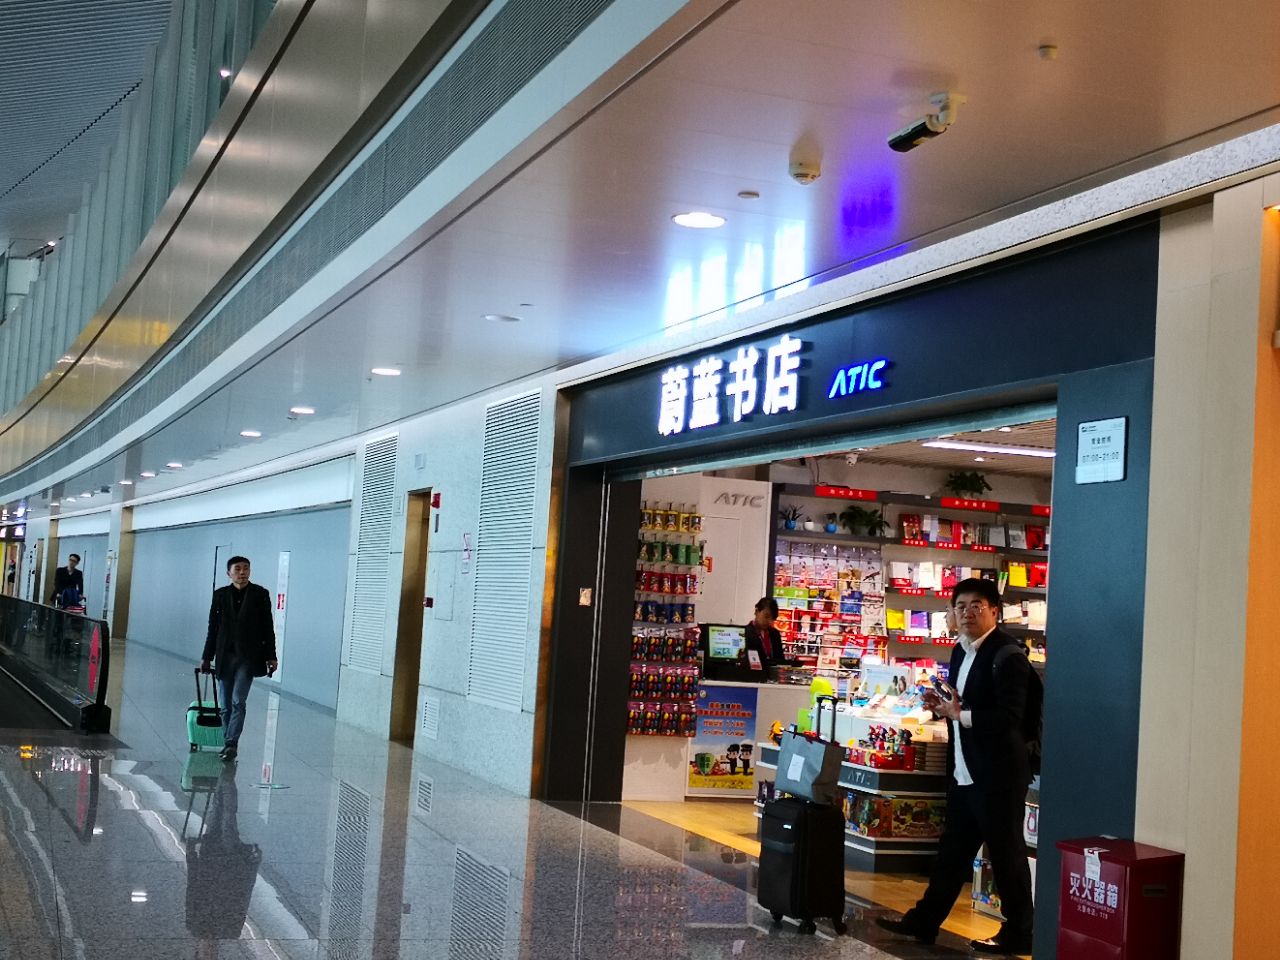 重庆江北机场T3A航站楼将启用 发几张内部照看看 - 第2页 - 城市论坛 - 天府社区